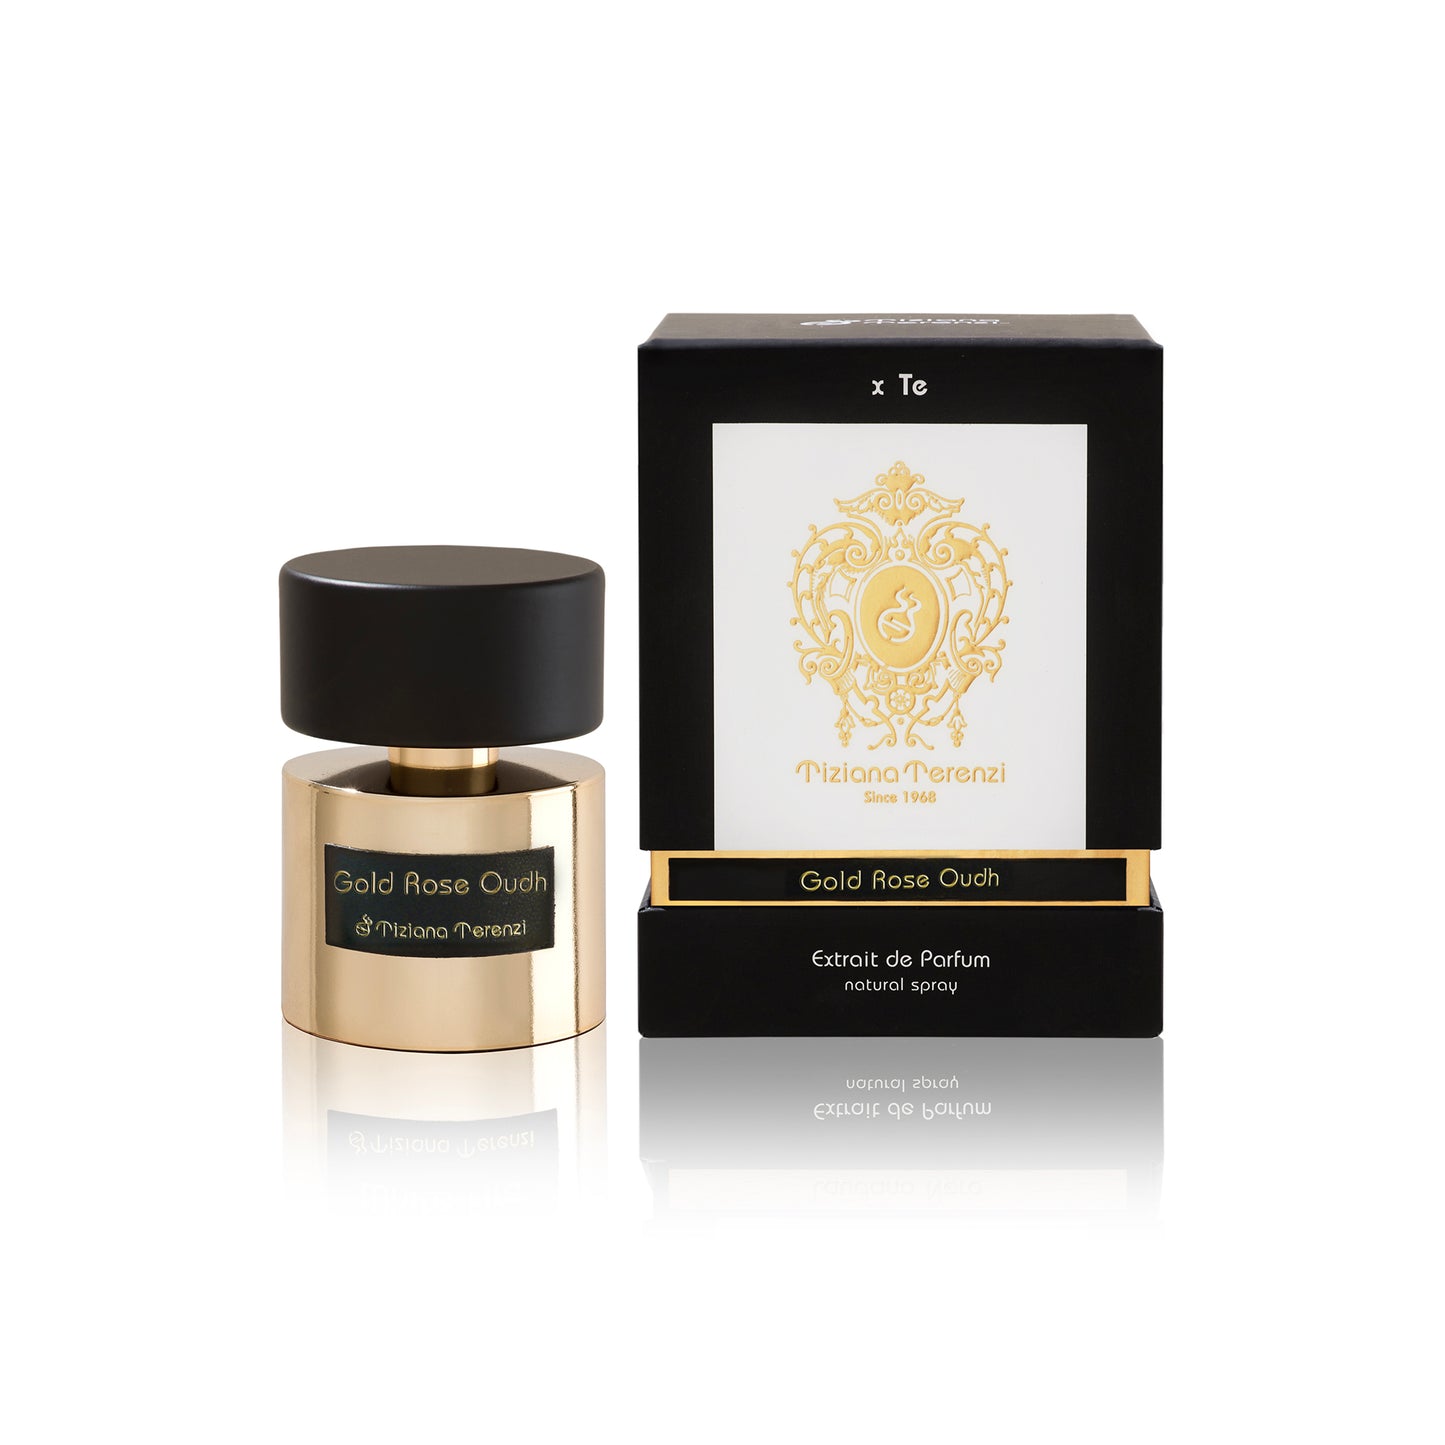 Gold Rose Oudh 3.4 oz Extrait de Parfum